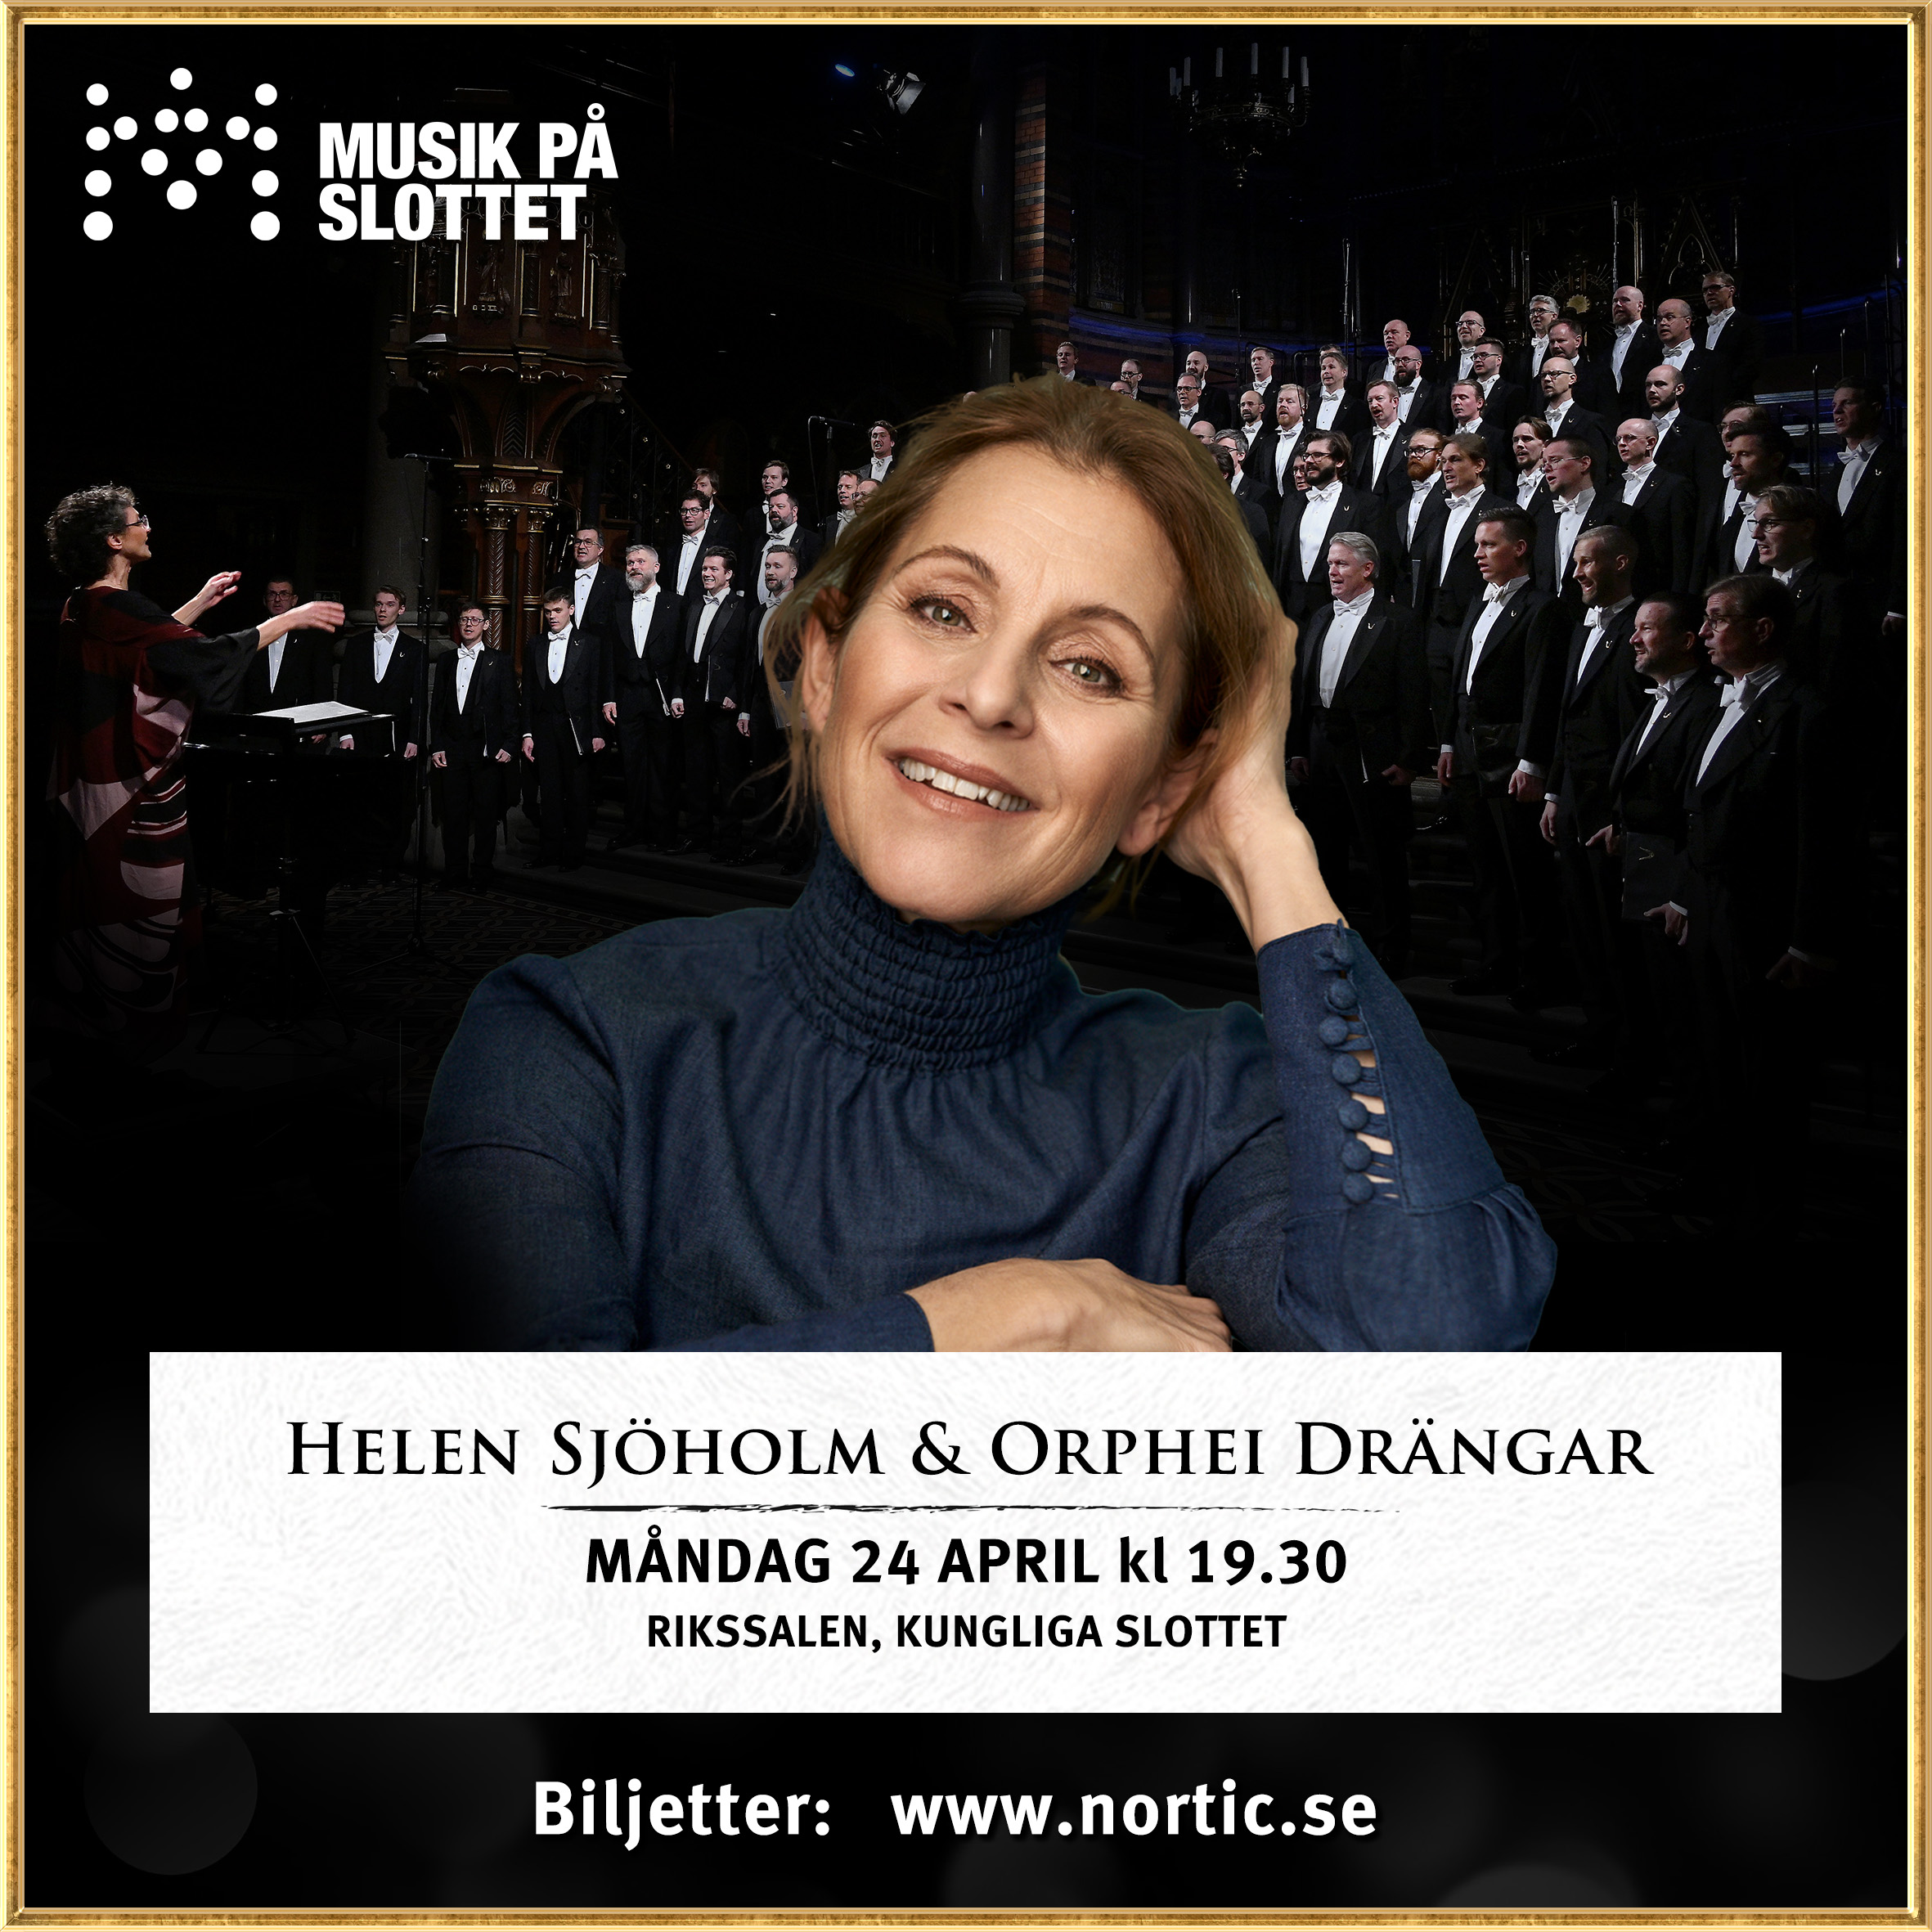 Helen Sjöholm & Orphei Drängar